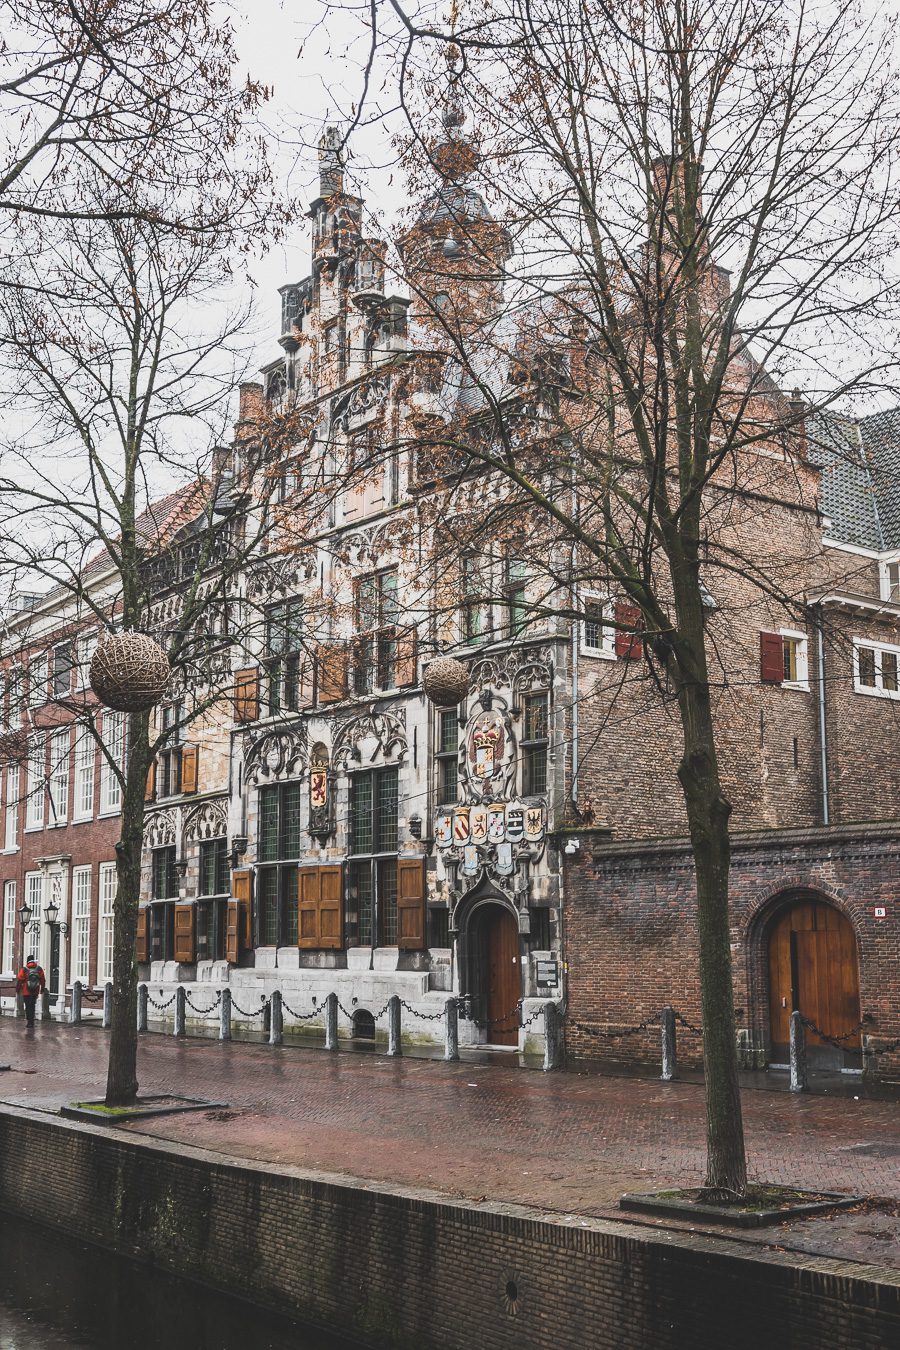 Delft, aux Pays-Bas, est une ville charmante qui regorge d'histoire et de culture. Avec ses nombreux canaux, son architecture du XVIe siècle et ses restaurants impressionnants, Delft ne manquera pas de faire bonne impression. Explorez l'agitation de la place Markt, promenez-vous le long des canaux pittoresques et perdez-vous dans les rues pavées, ou appréciez les œuvres d'art exposées à la Royal Delftware Factory - peu importe ce que vous choisissez, Delft promet une expérience magique.